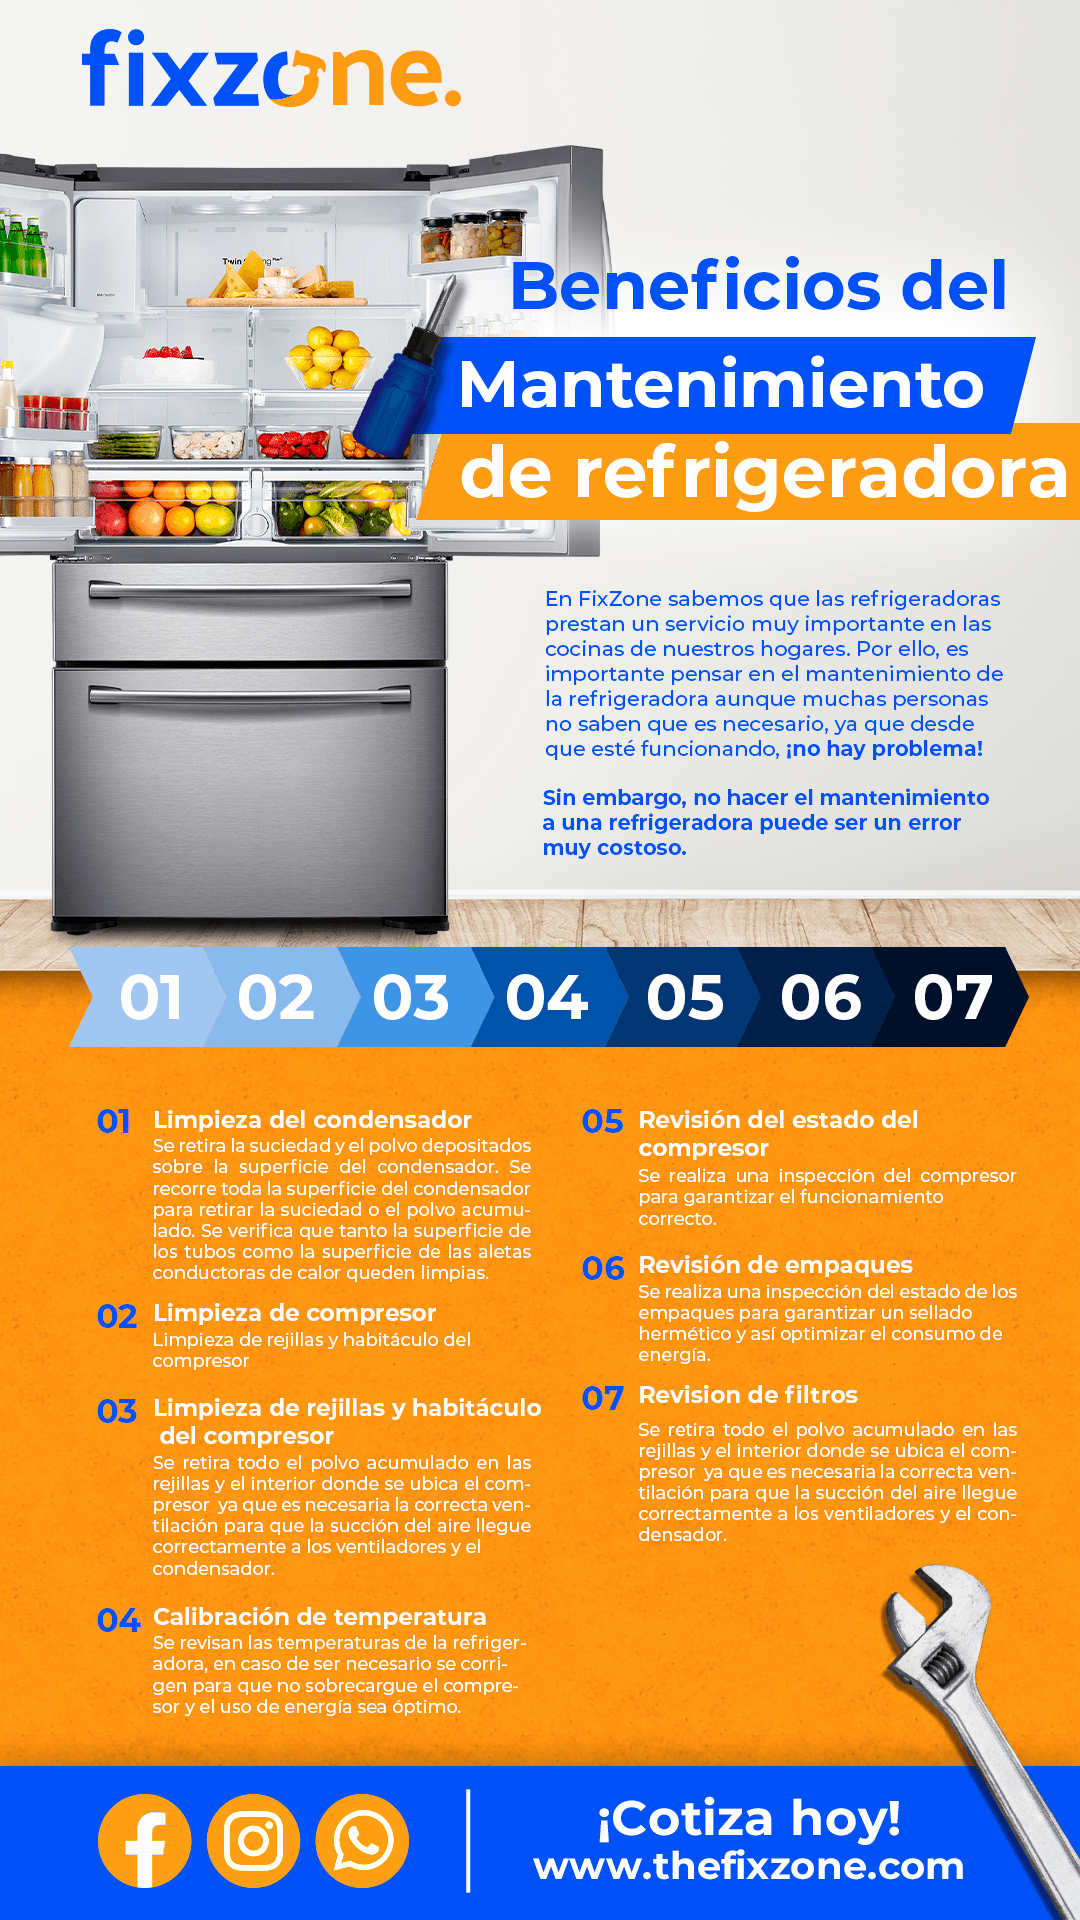 Beneficios del mantenimiento de refrigeradora